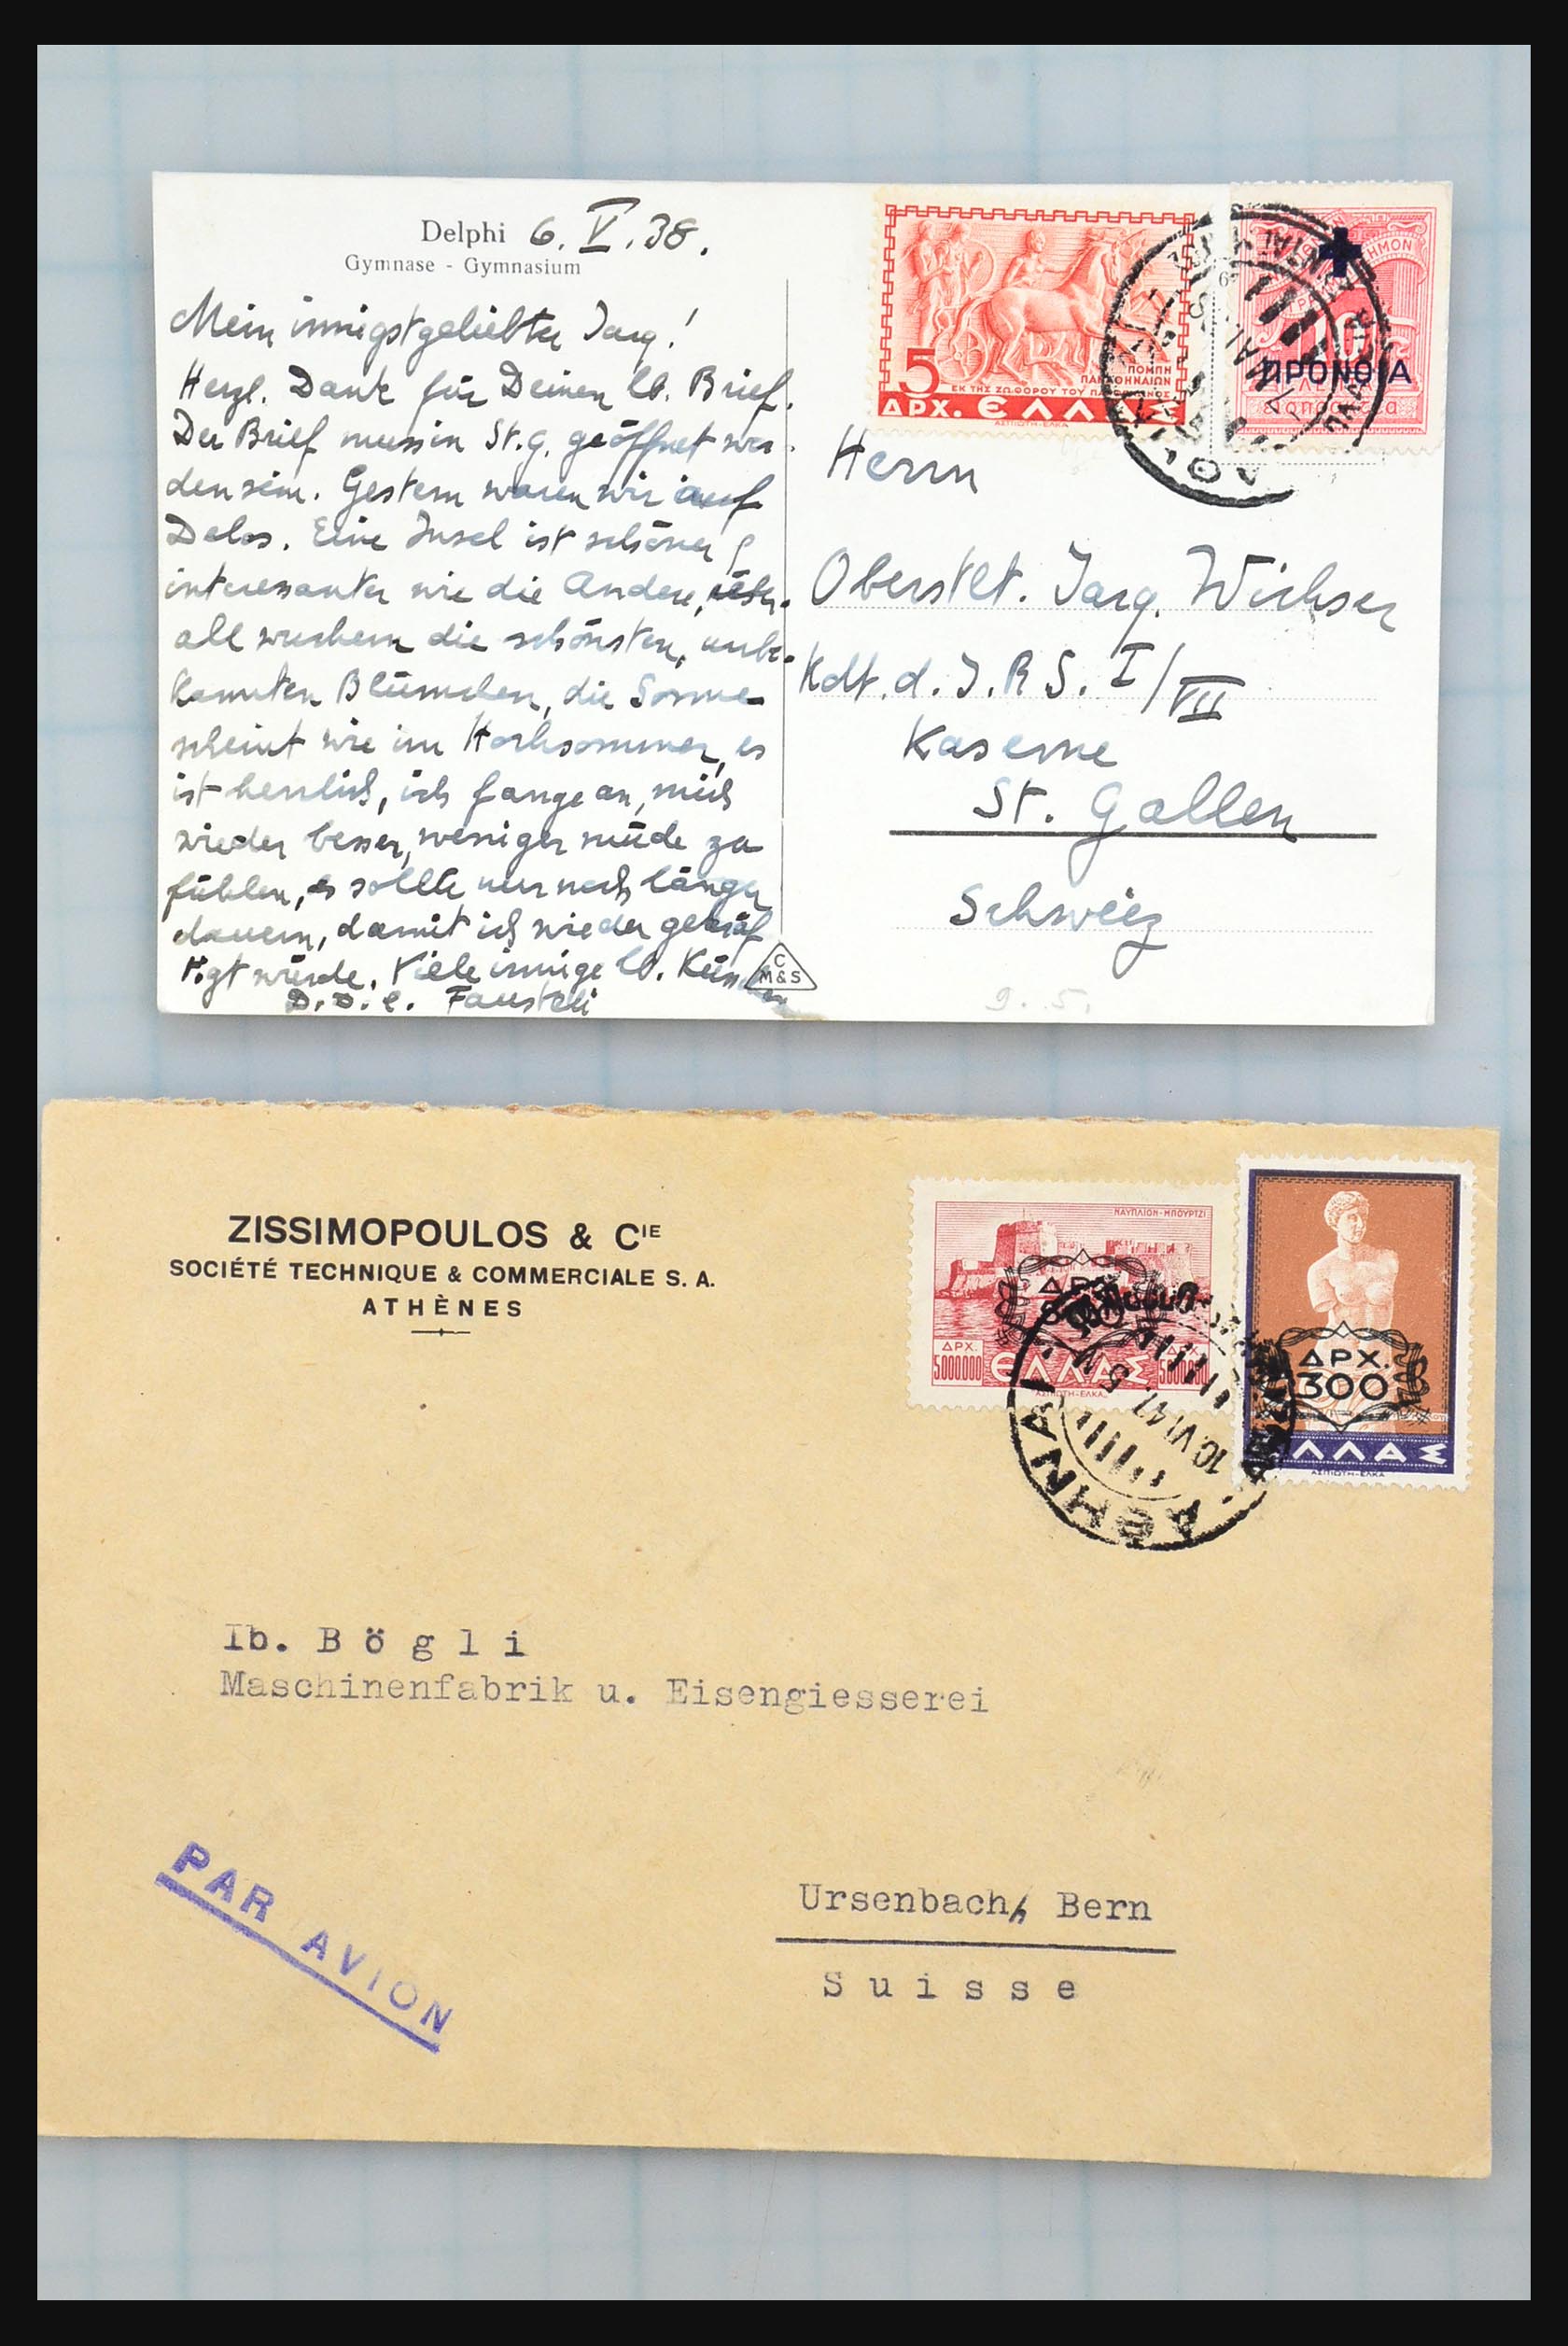 31358 187 - 31358 Portugal/Luxemburg/Griekenland brieven 1880-1960.